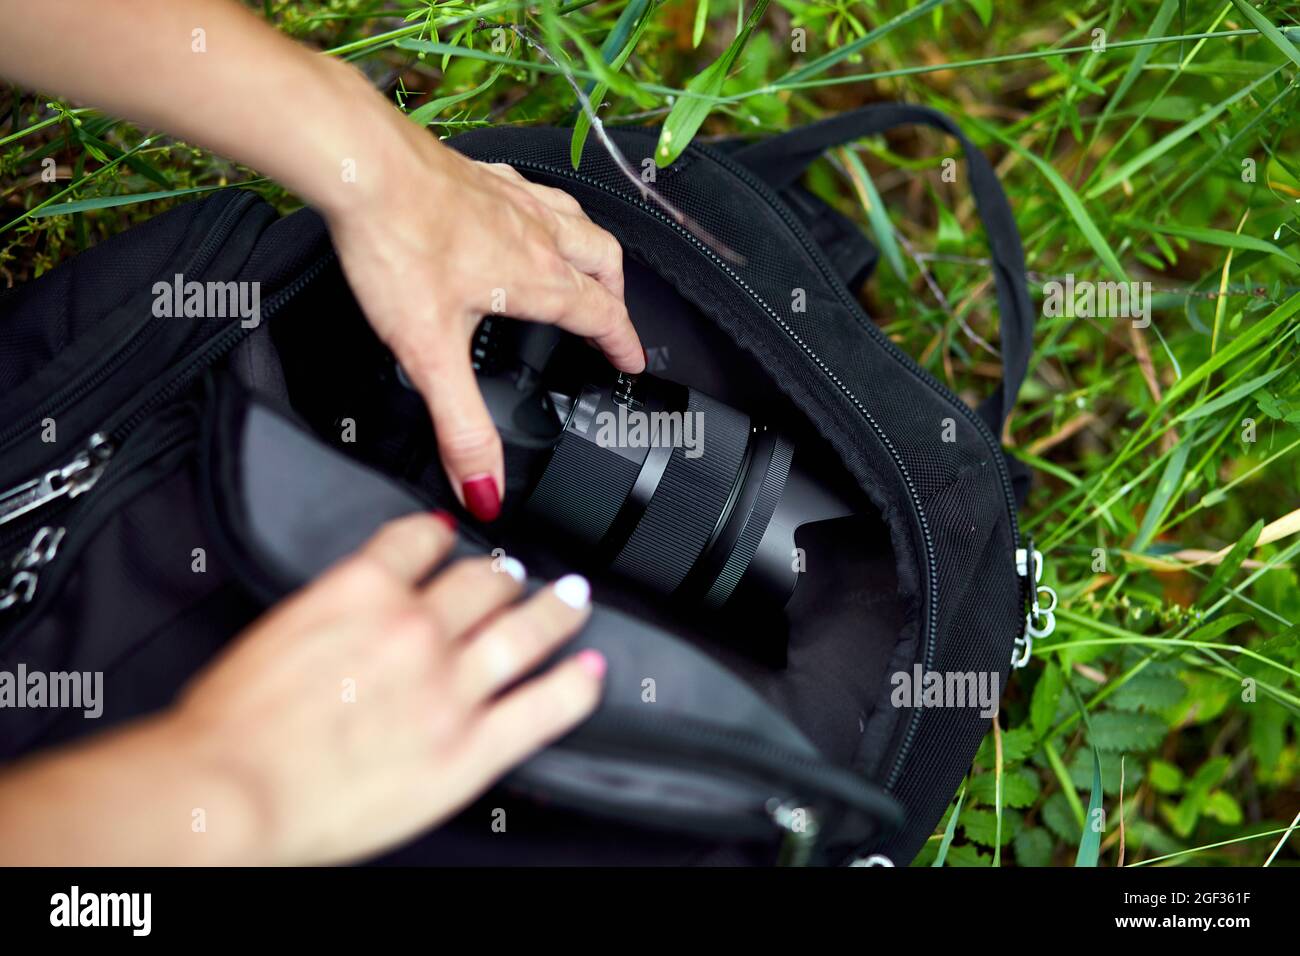 Photographe femme empoche ou sort son sac à dos d'appareil photo, sac  appareils pour la photographie vue de dessus, extérieur Photo Stock - Alamy